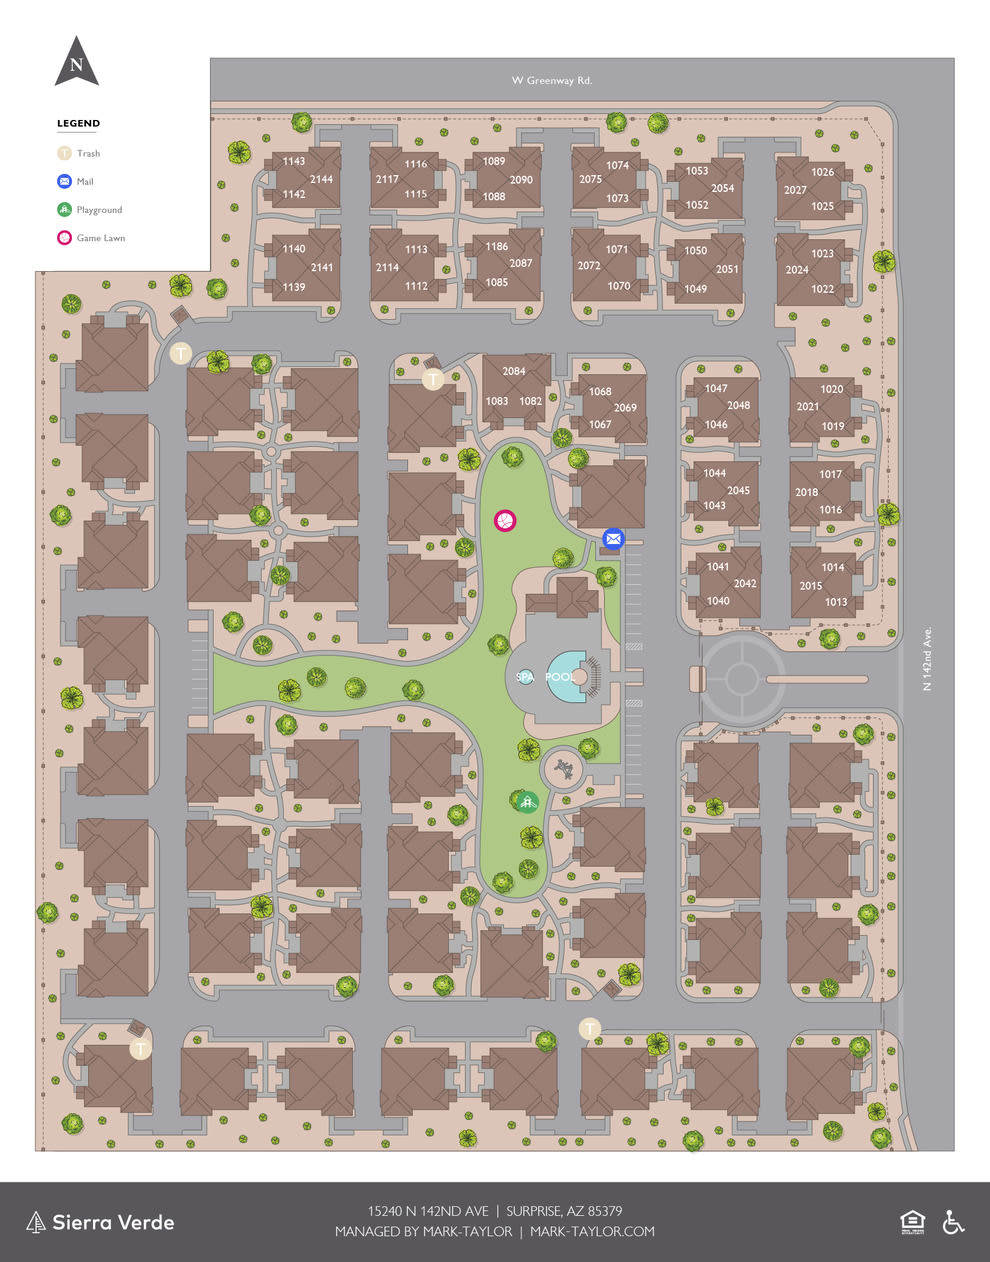 Sierra Verde site plan